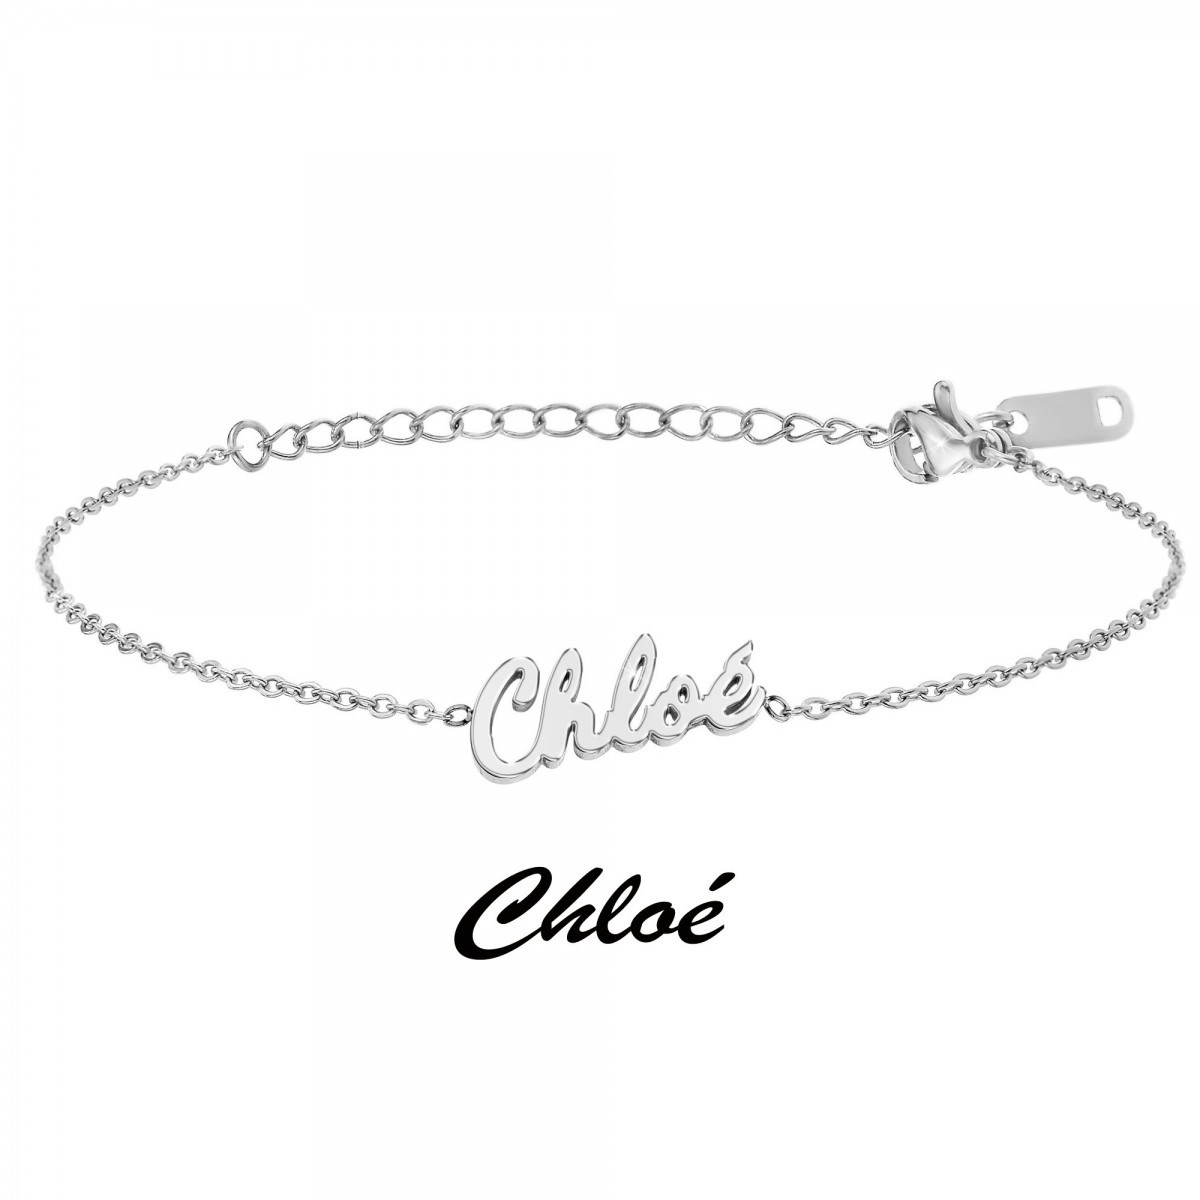 Chloé - Bracelet prénom - vue 3